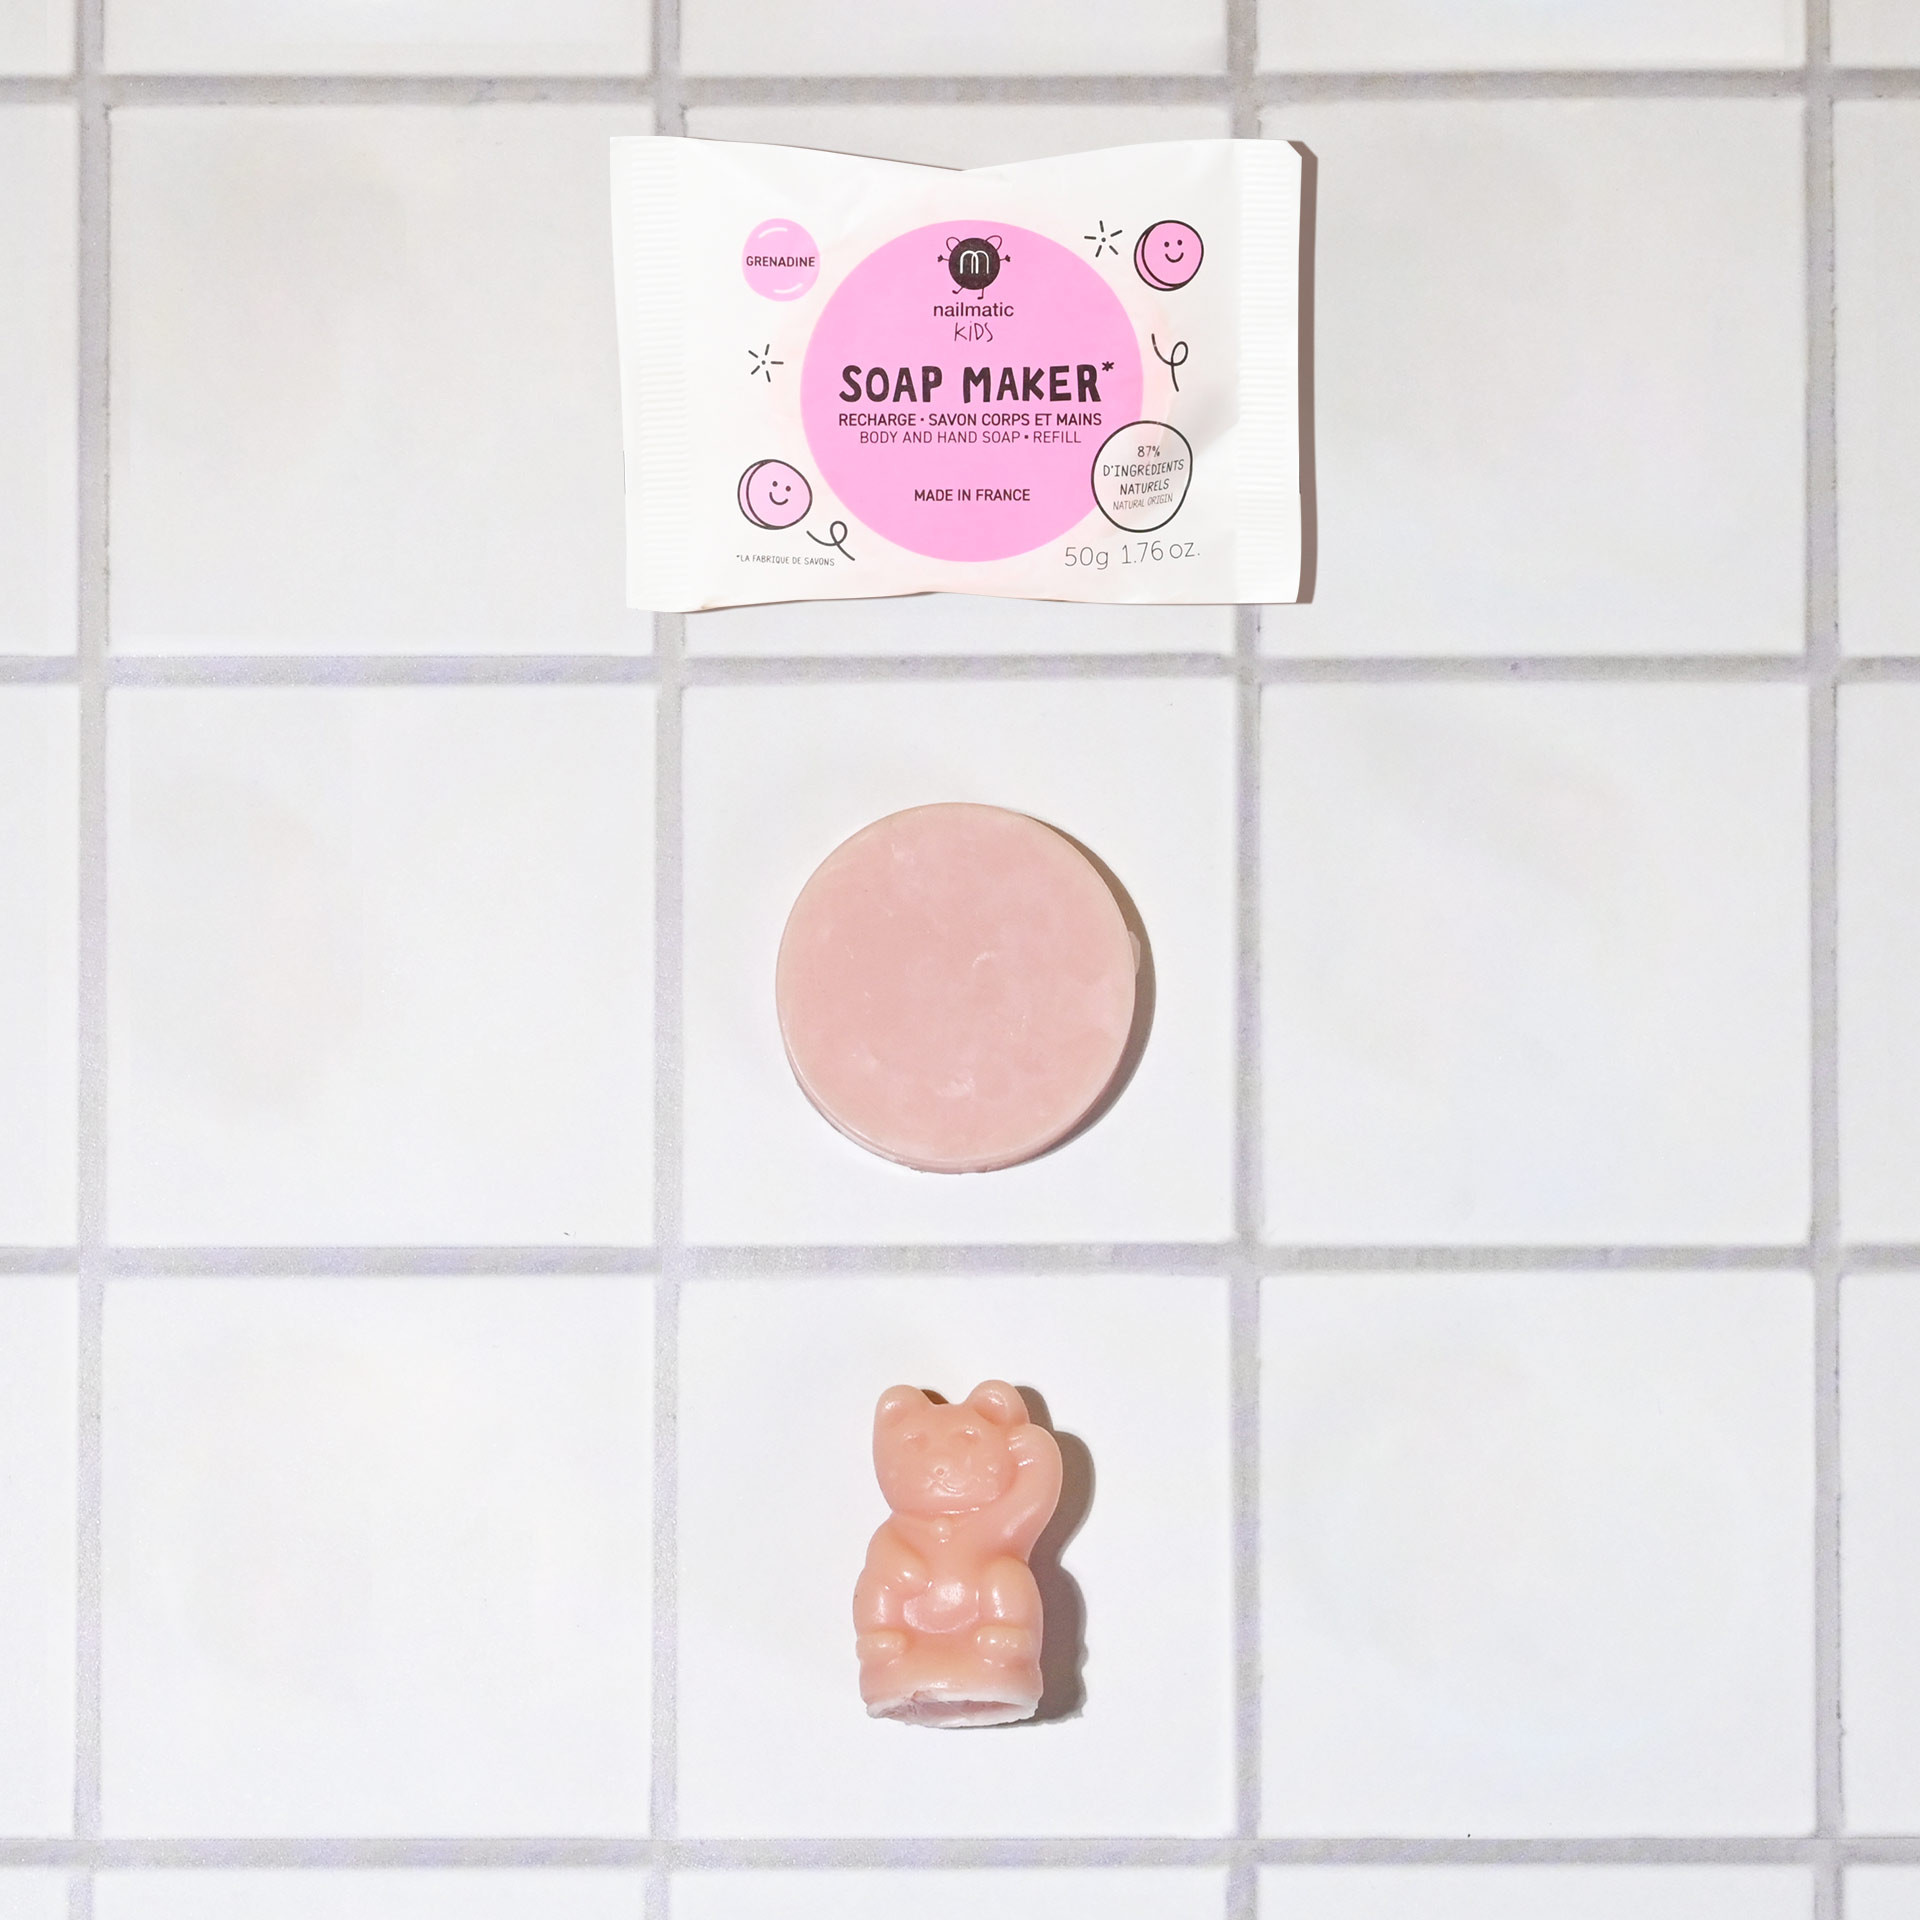 recharge savon grenadine rose pour kit fabrique de savon chat enfants nailmatic kids